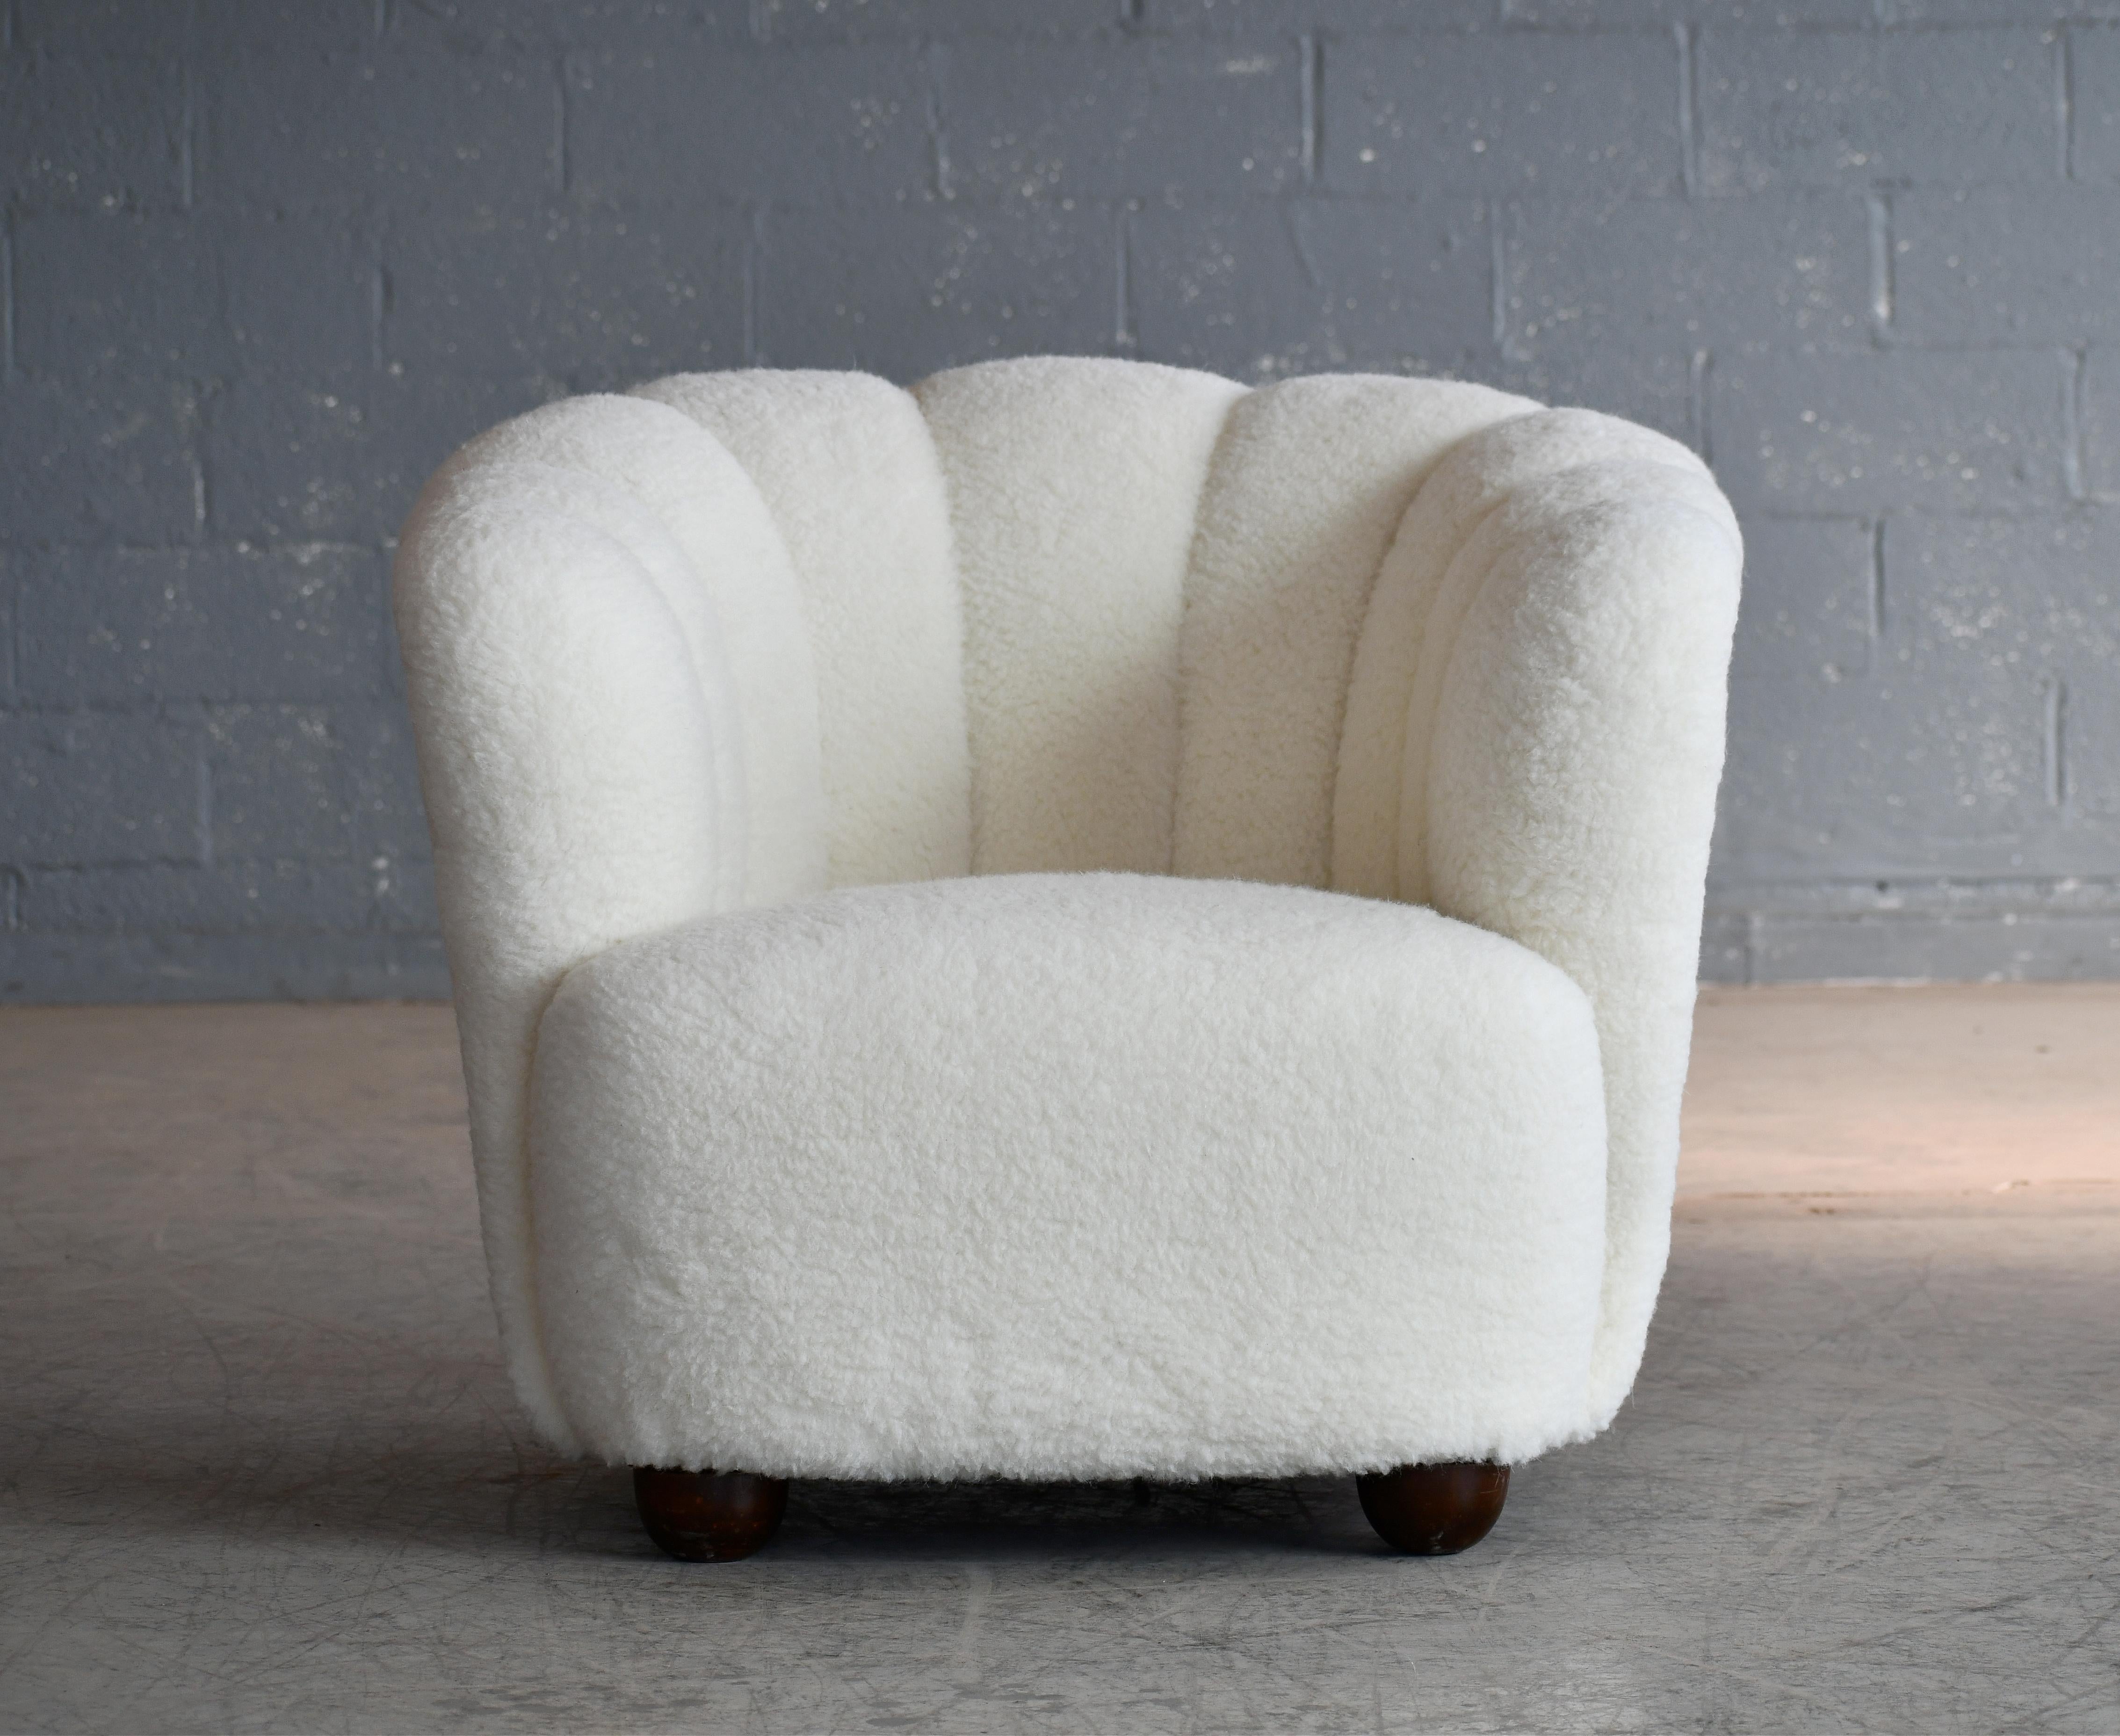 Confortables, exubérantes et superbement fabriquées, ces chaises capturent parfaitement l'essence du design danois des années 1940, issu de la fin de l'ère Art déco et du milieu du siècle. Les dossiers incurvés, les proportions basses et les pieds